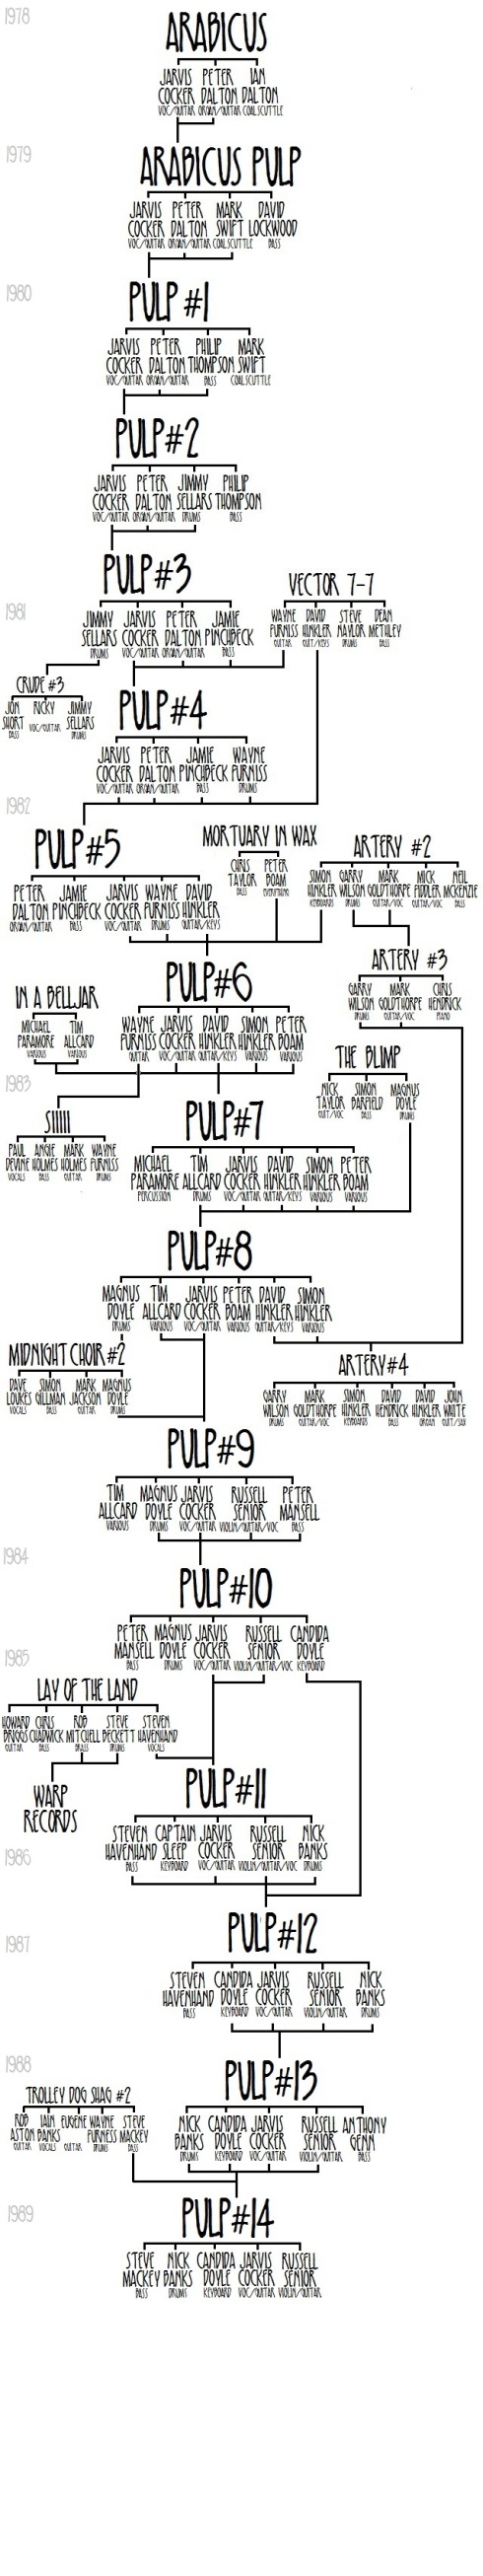 Pulp Family Tree